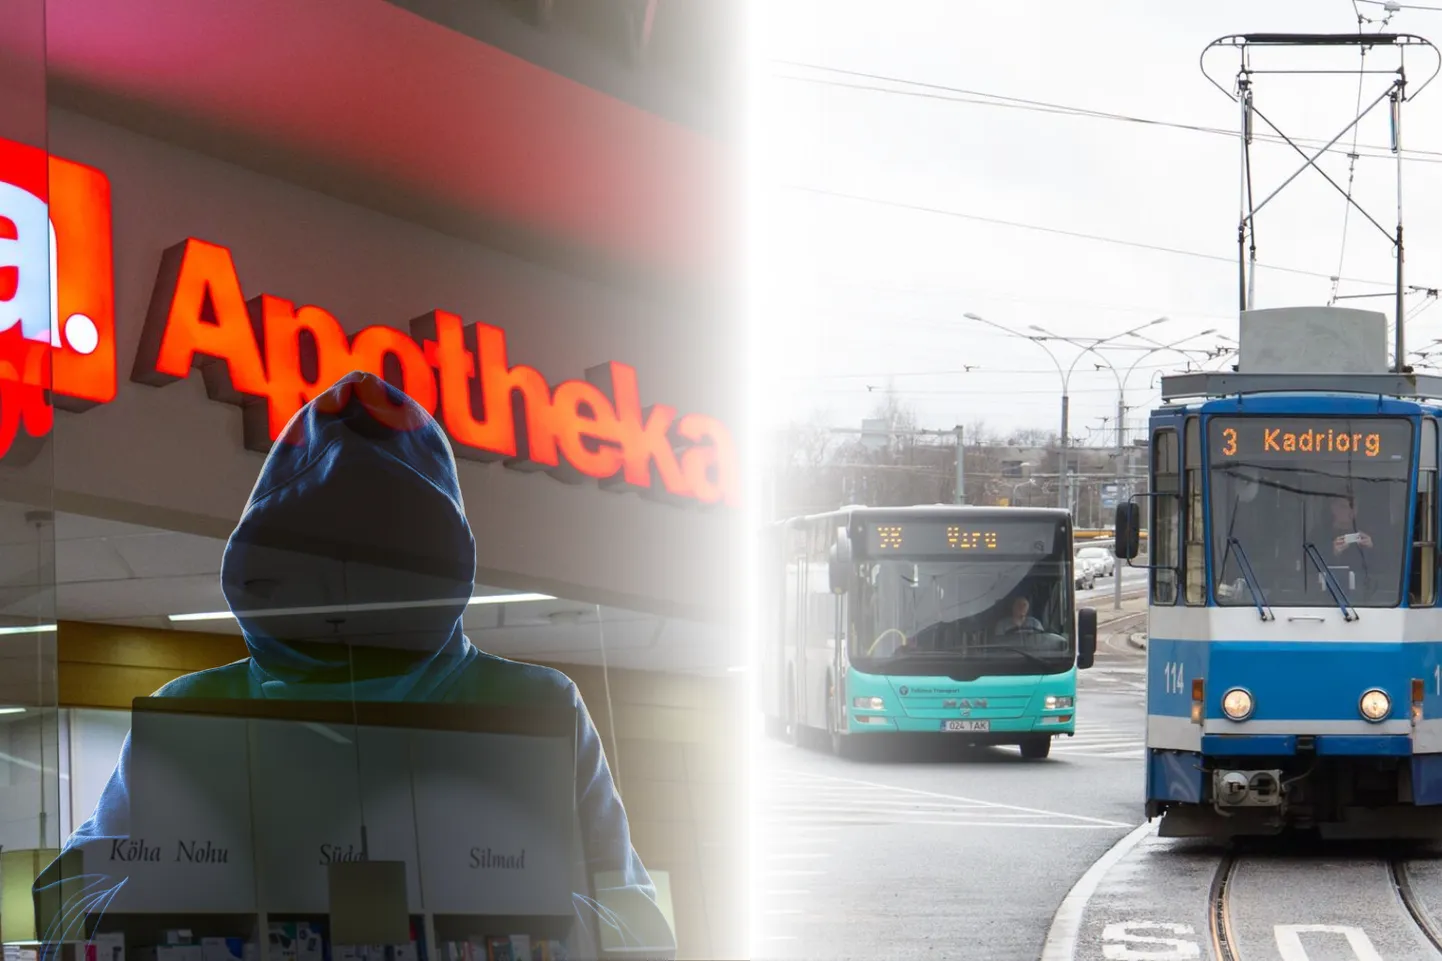 Неделя в фокусе. Бесплатный общественный транспорт в Таллинне и утечка данных из Apotheka.